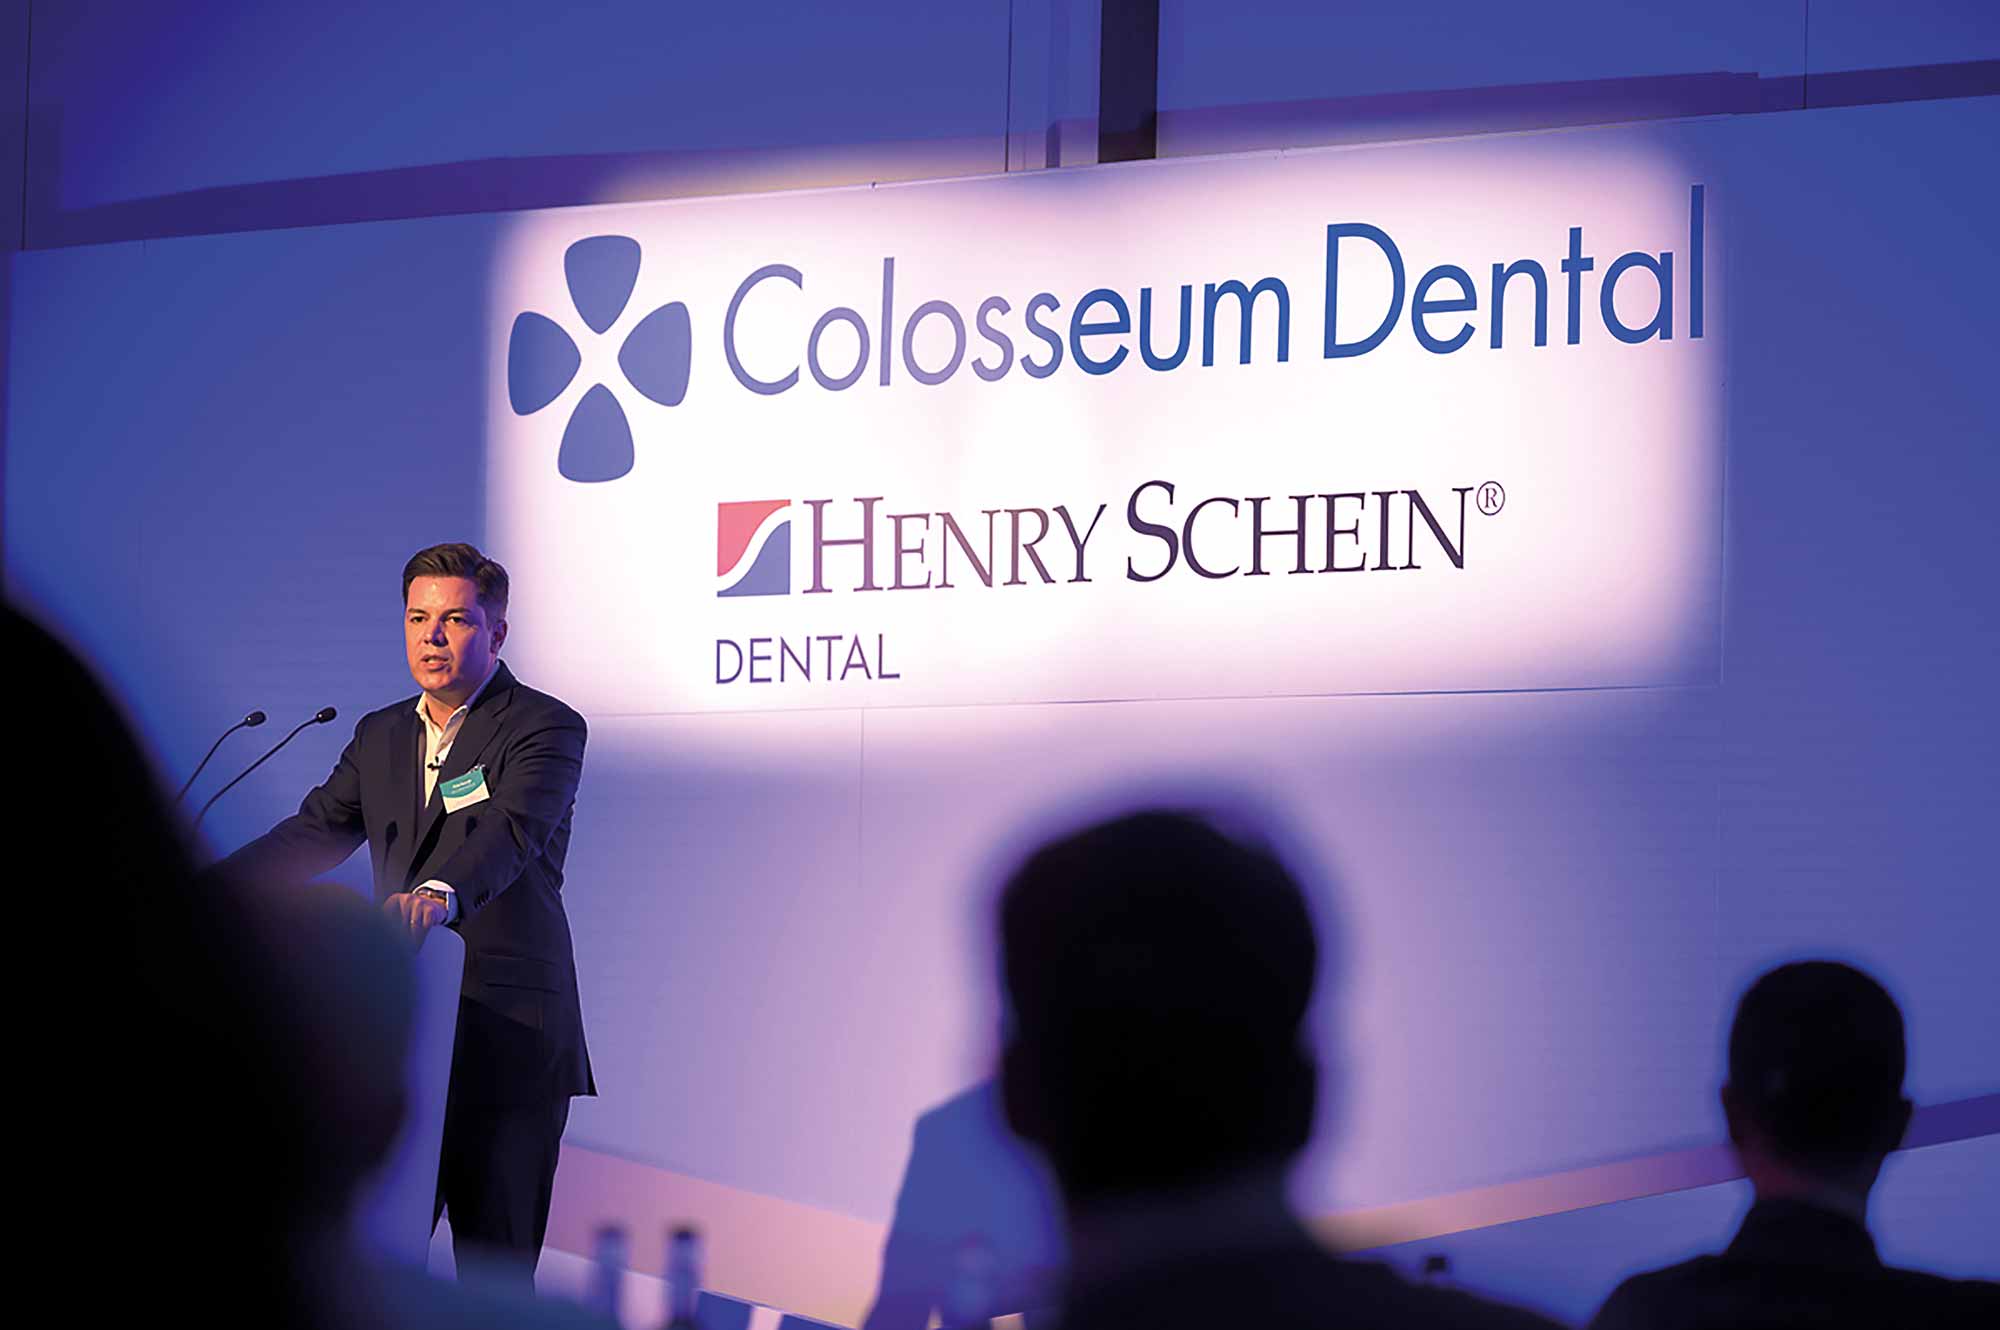 Colosseum Dental UK